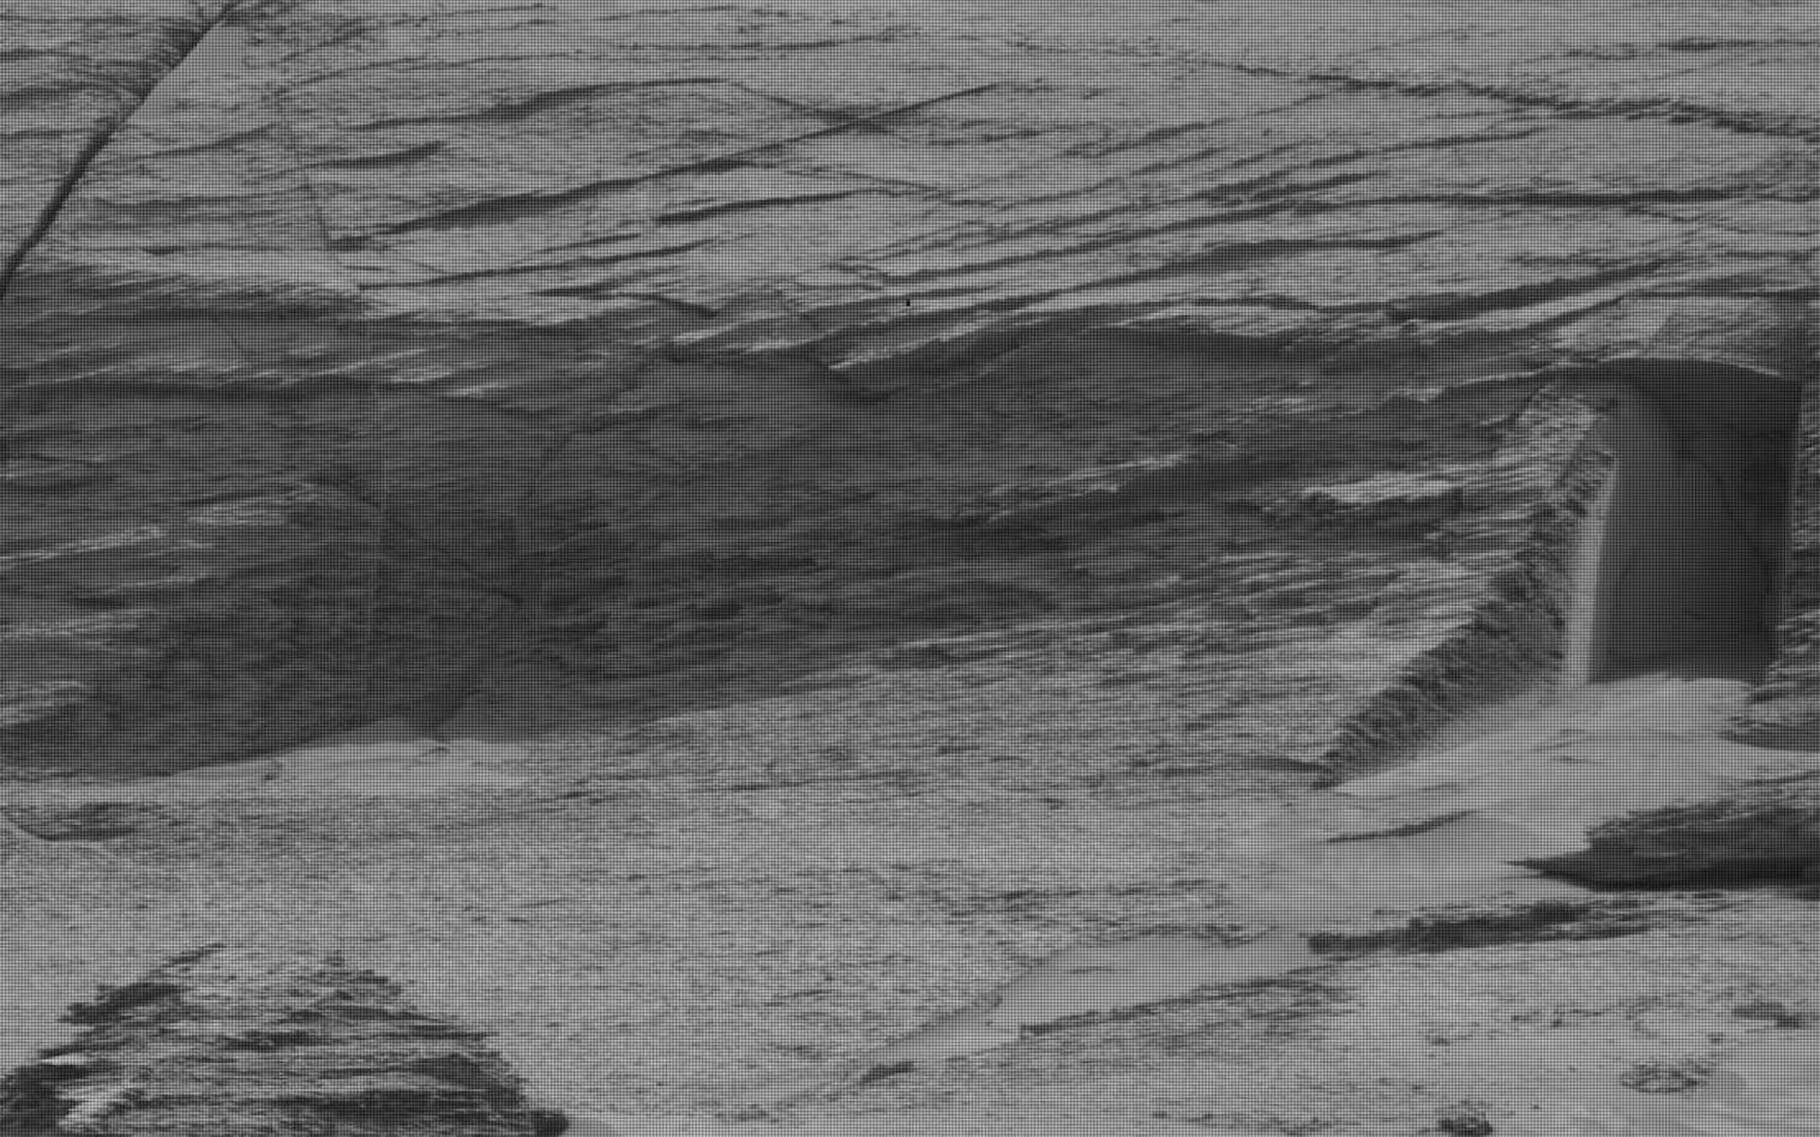 Curieuse découverte sur Mars d'une porte d'entrée creusée dans la roche !